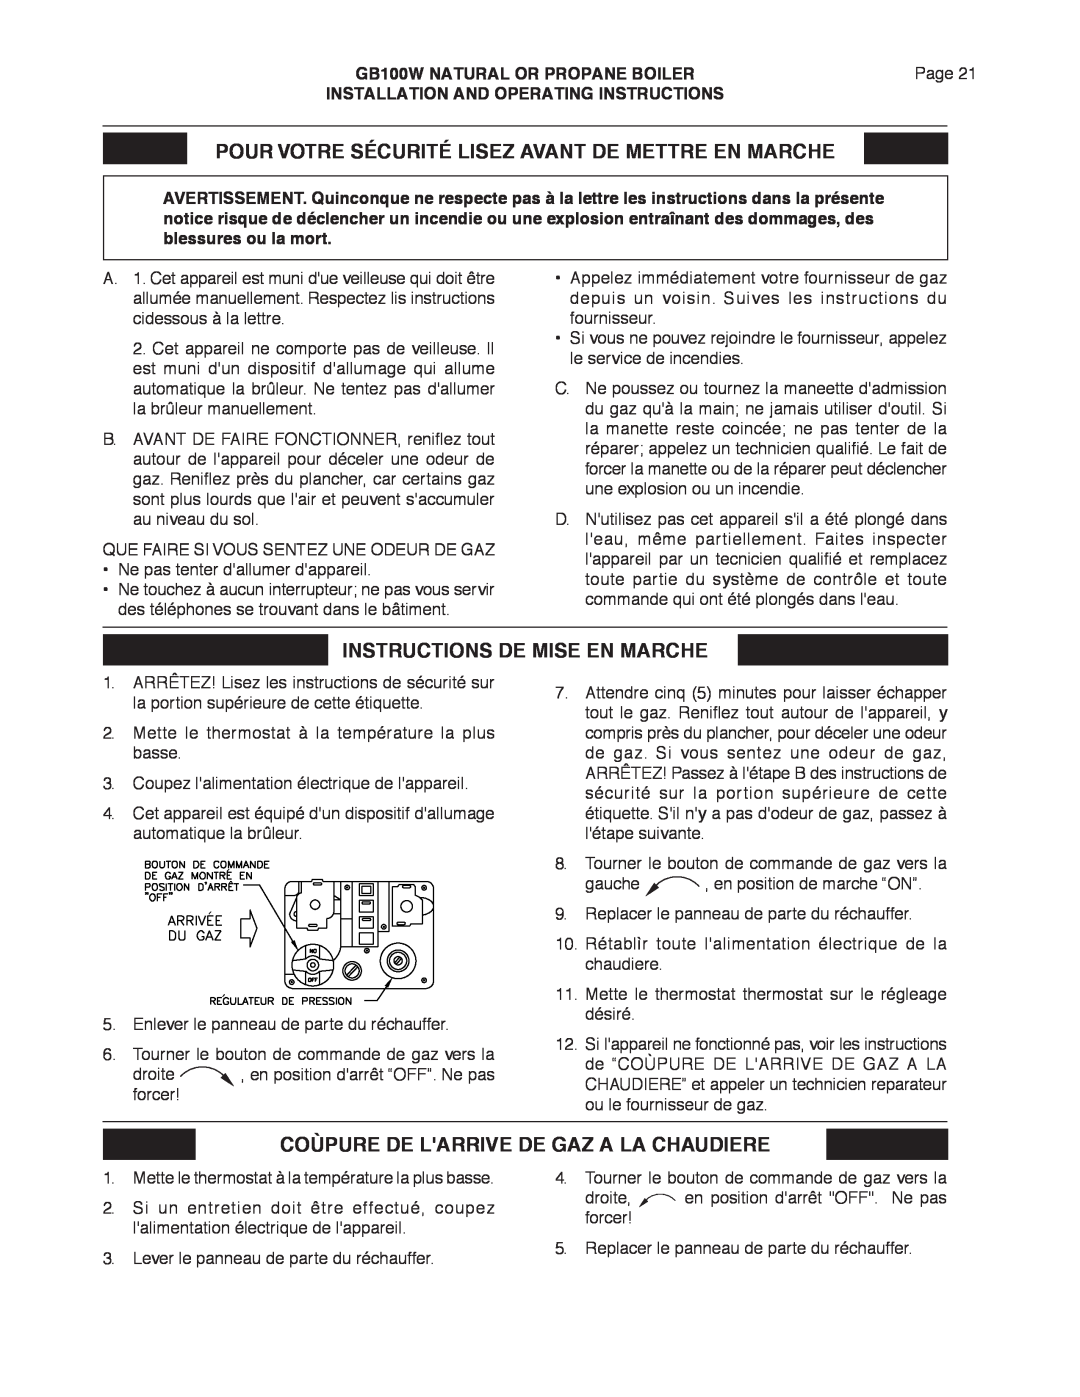 Smith Cast Iron Boilers GB100W manual Instructions De Mise En Marche, Coùpure De Larrive De Gaz A La Chaudiere 